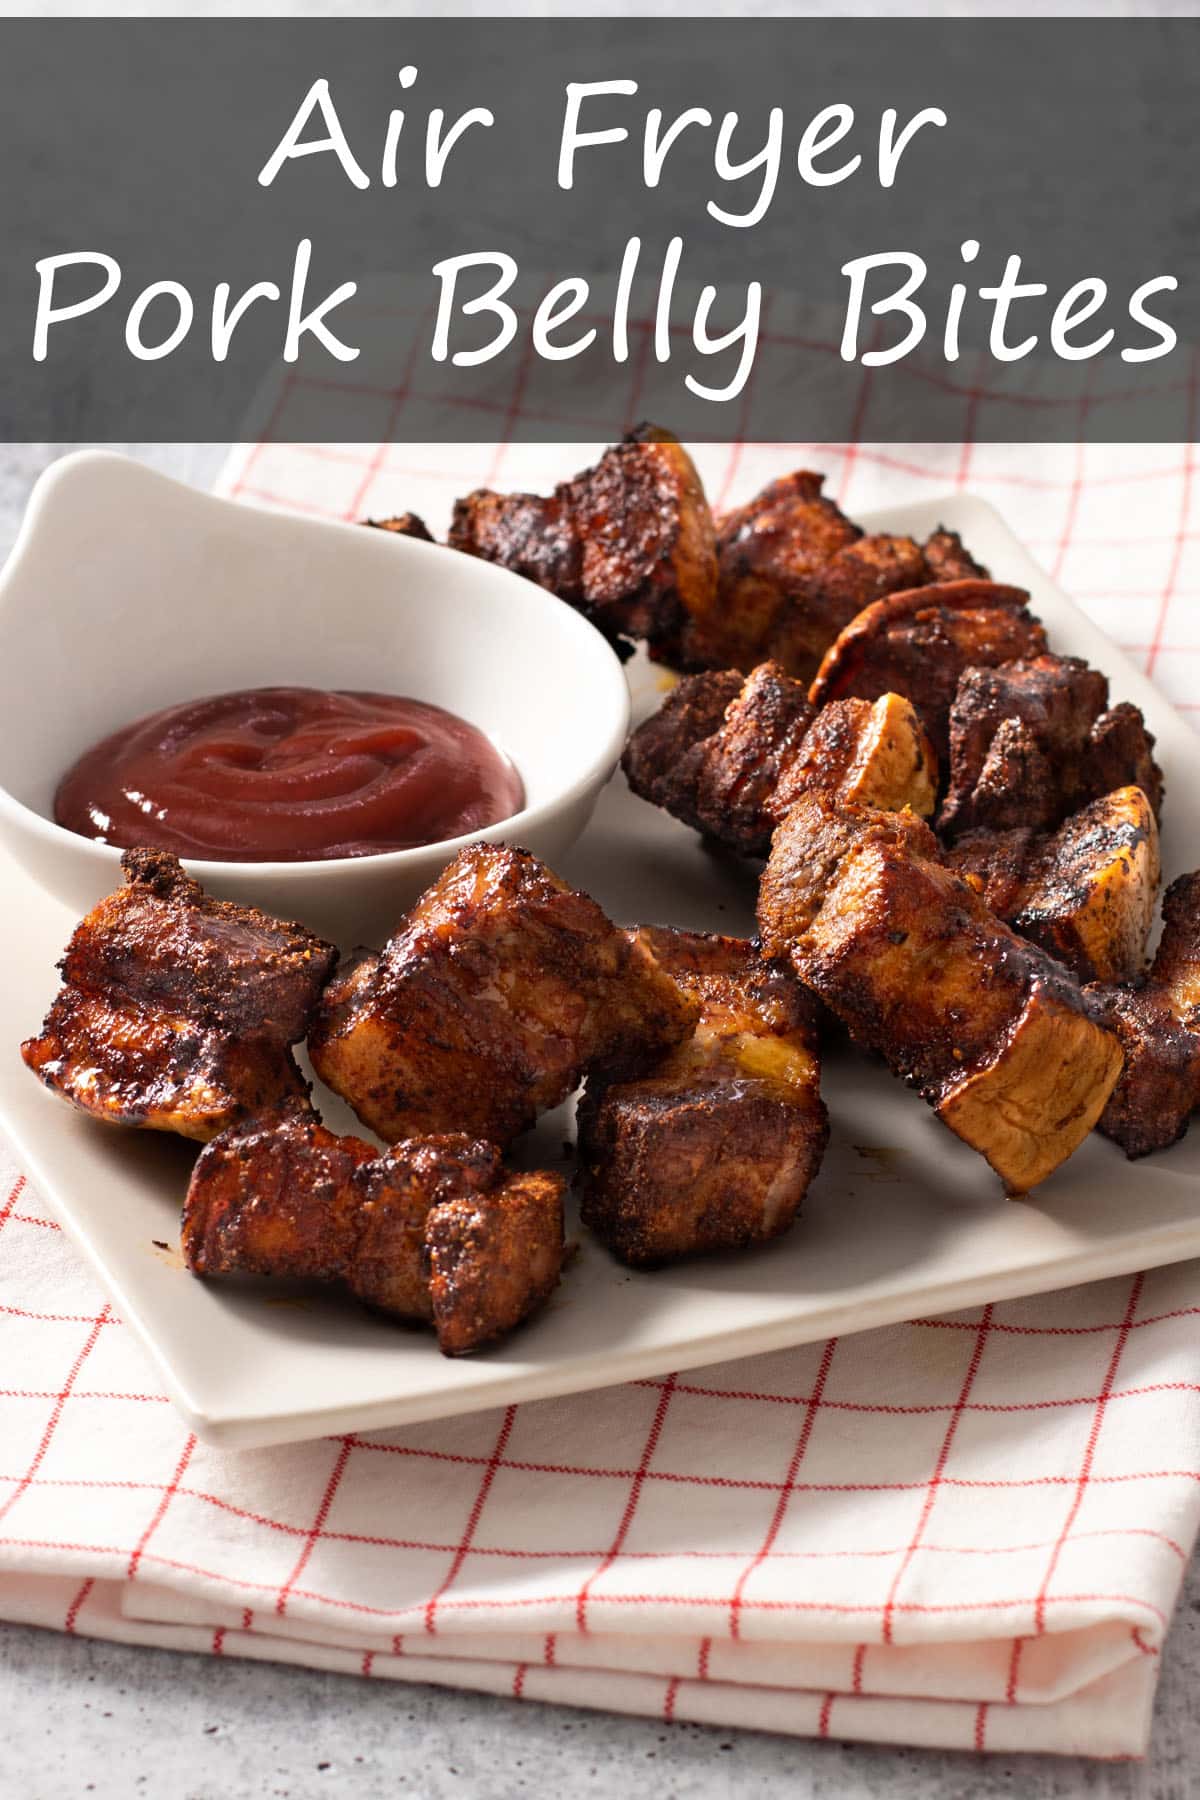 Air Fryer Pork Belly Bites